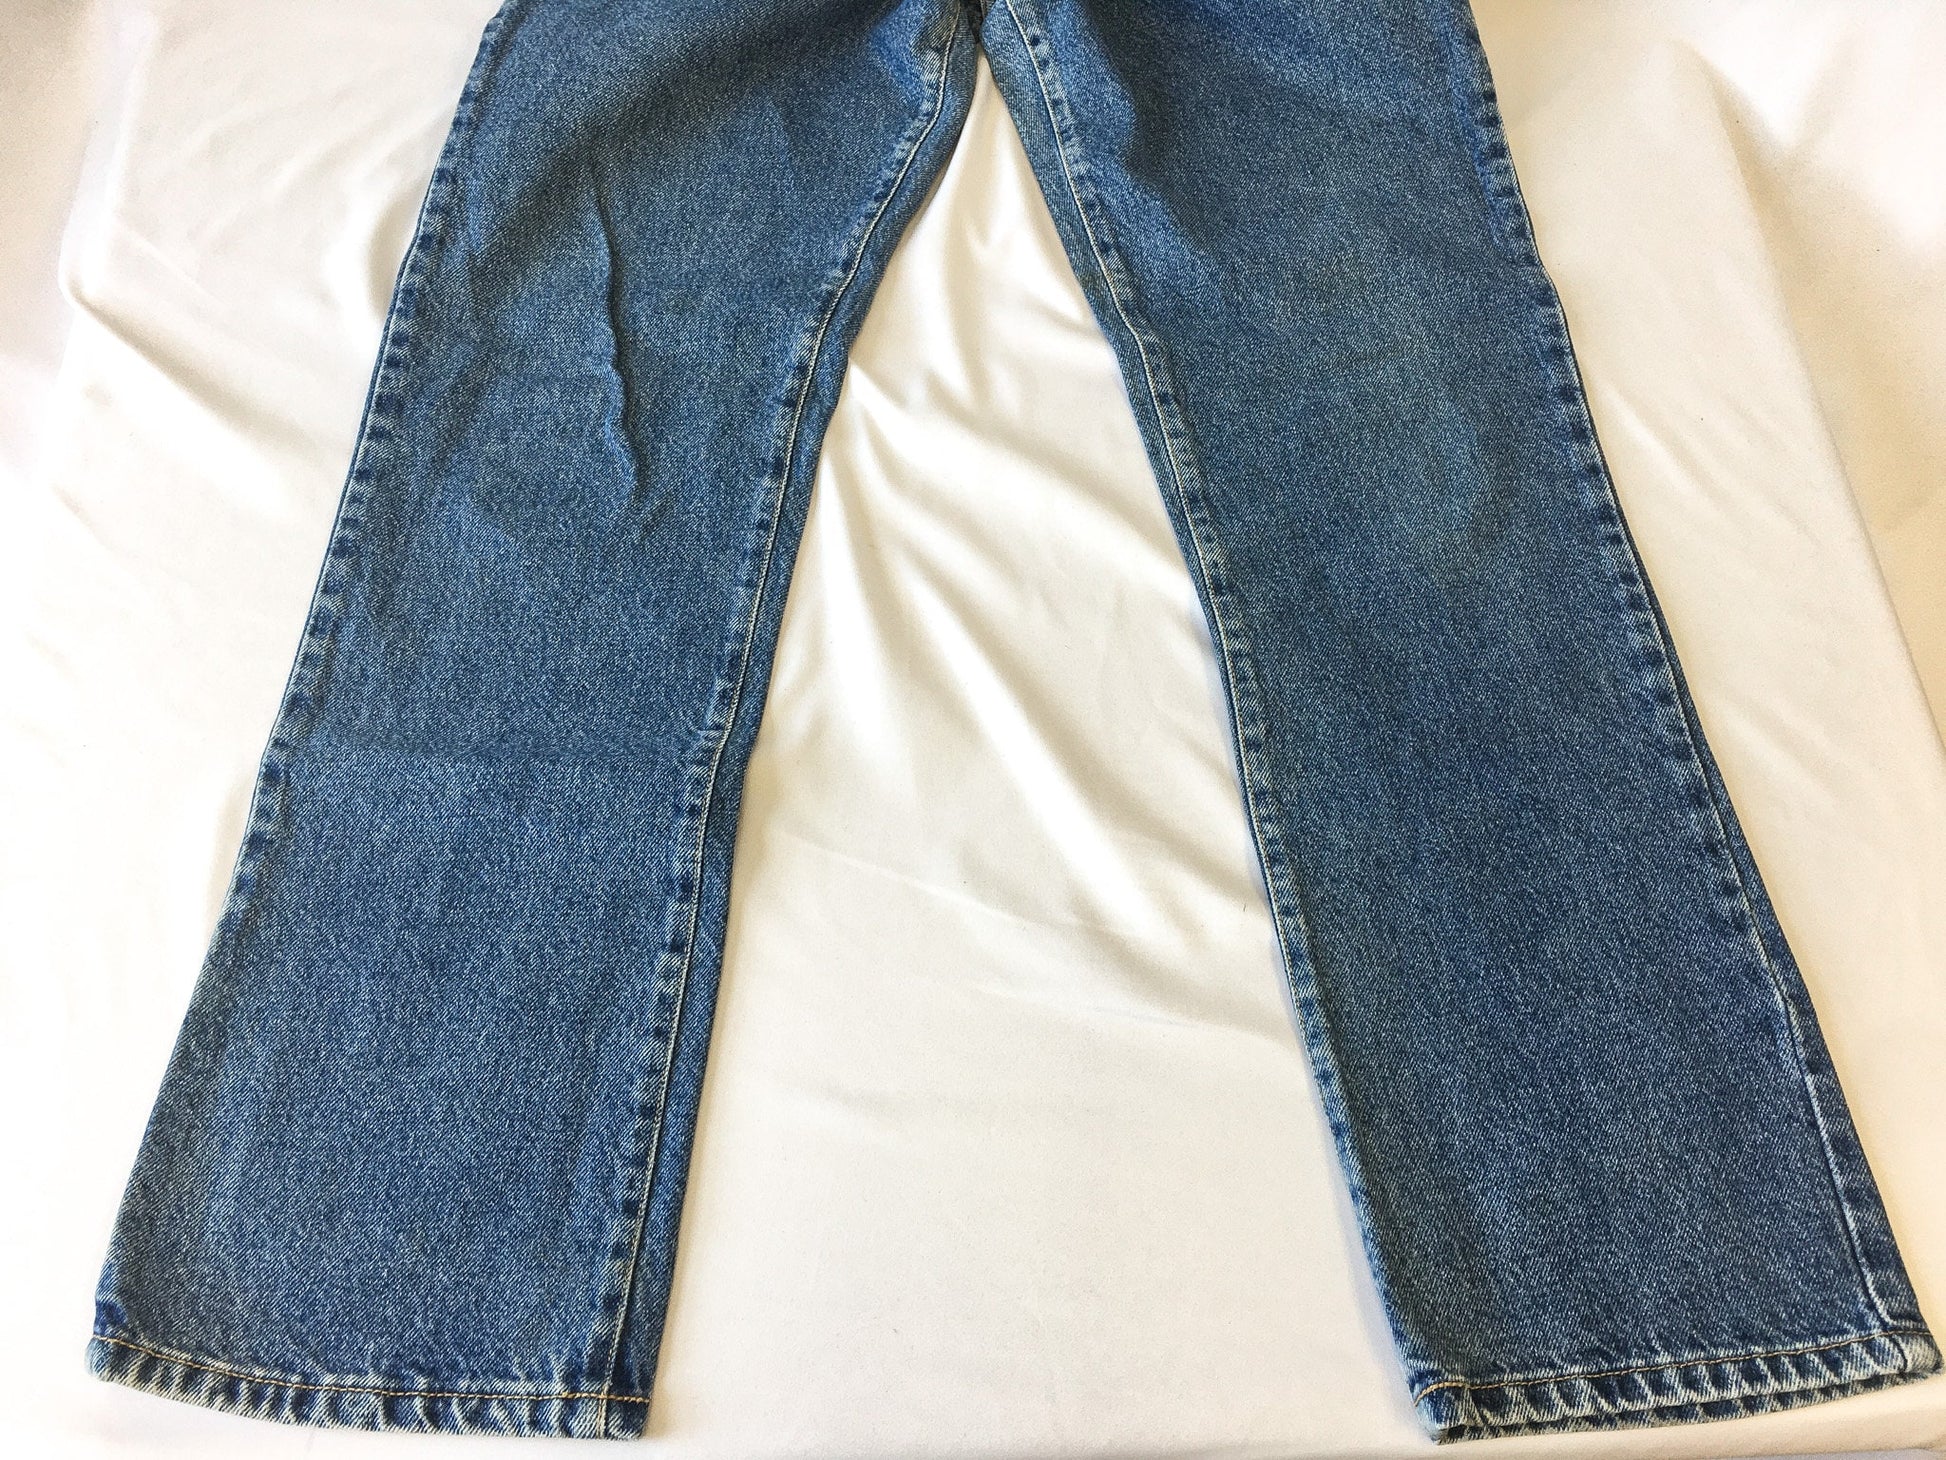 Vintage 90s Dr. Martens Air Wair Medium Wash Jeans, Sz. 30 x 32, (measures 29" x 30") Vintage 90s Denim